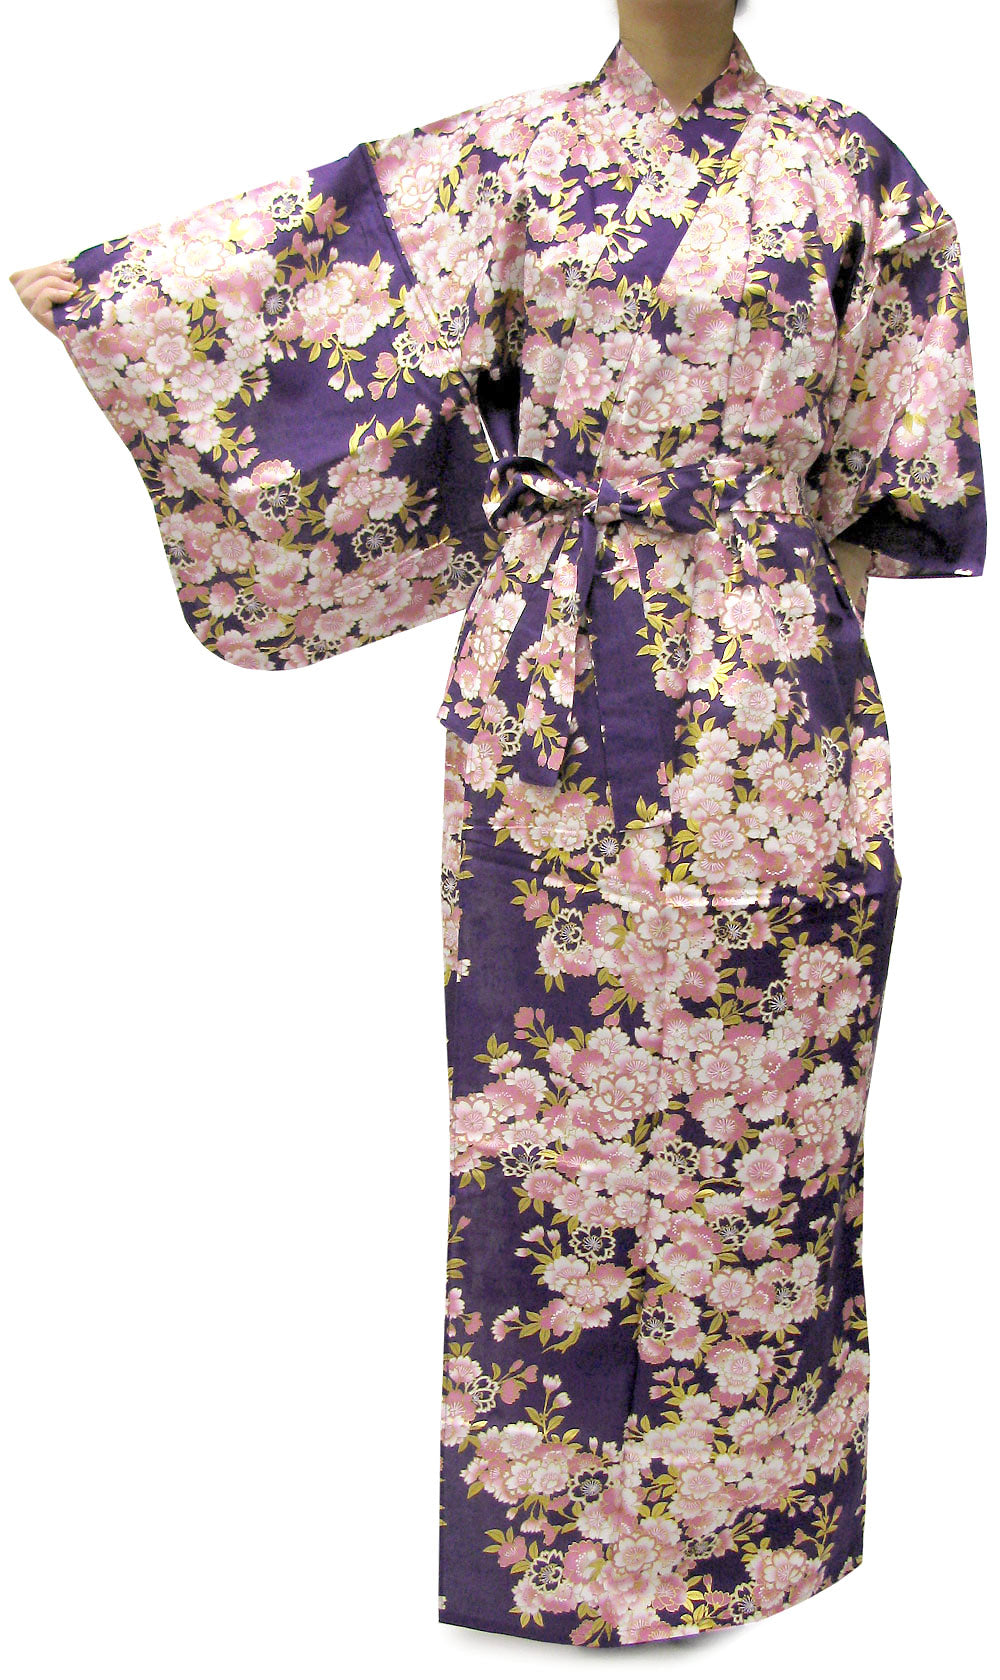 Women's Easy Yukata / Kimono Robe :  Japanese Traditional Clothes - SAKURA Purple